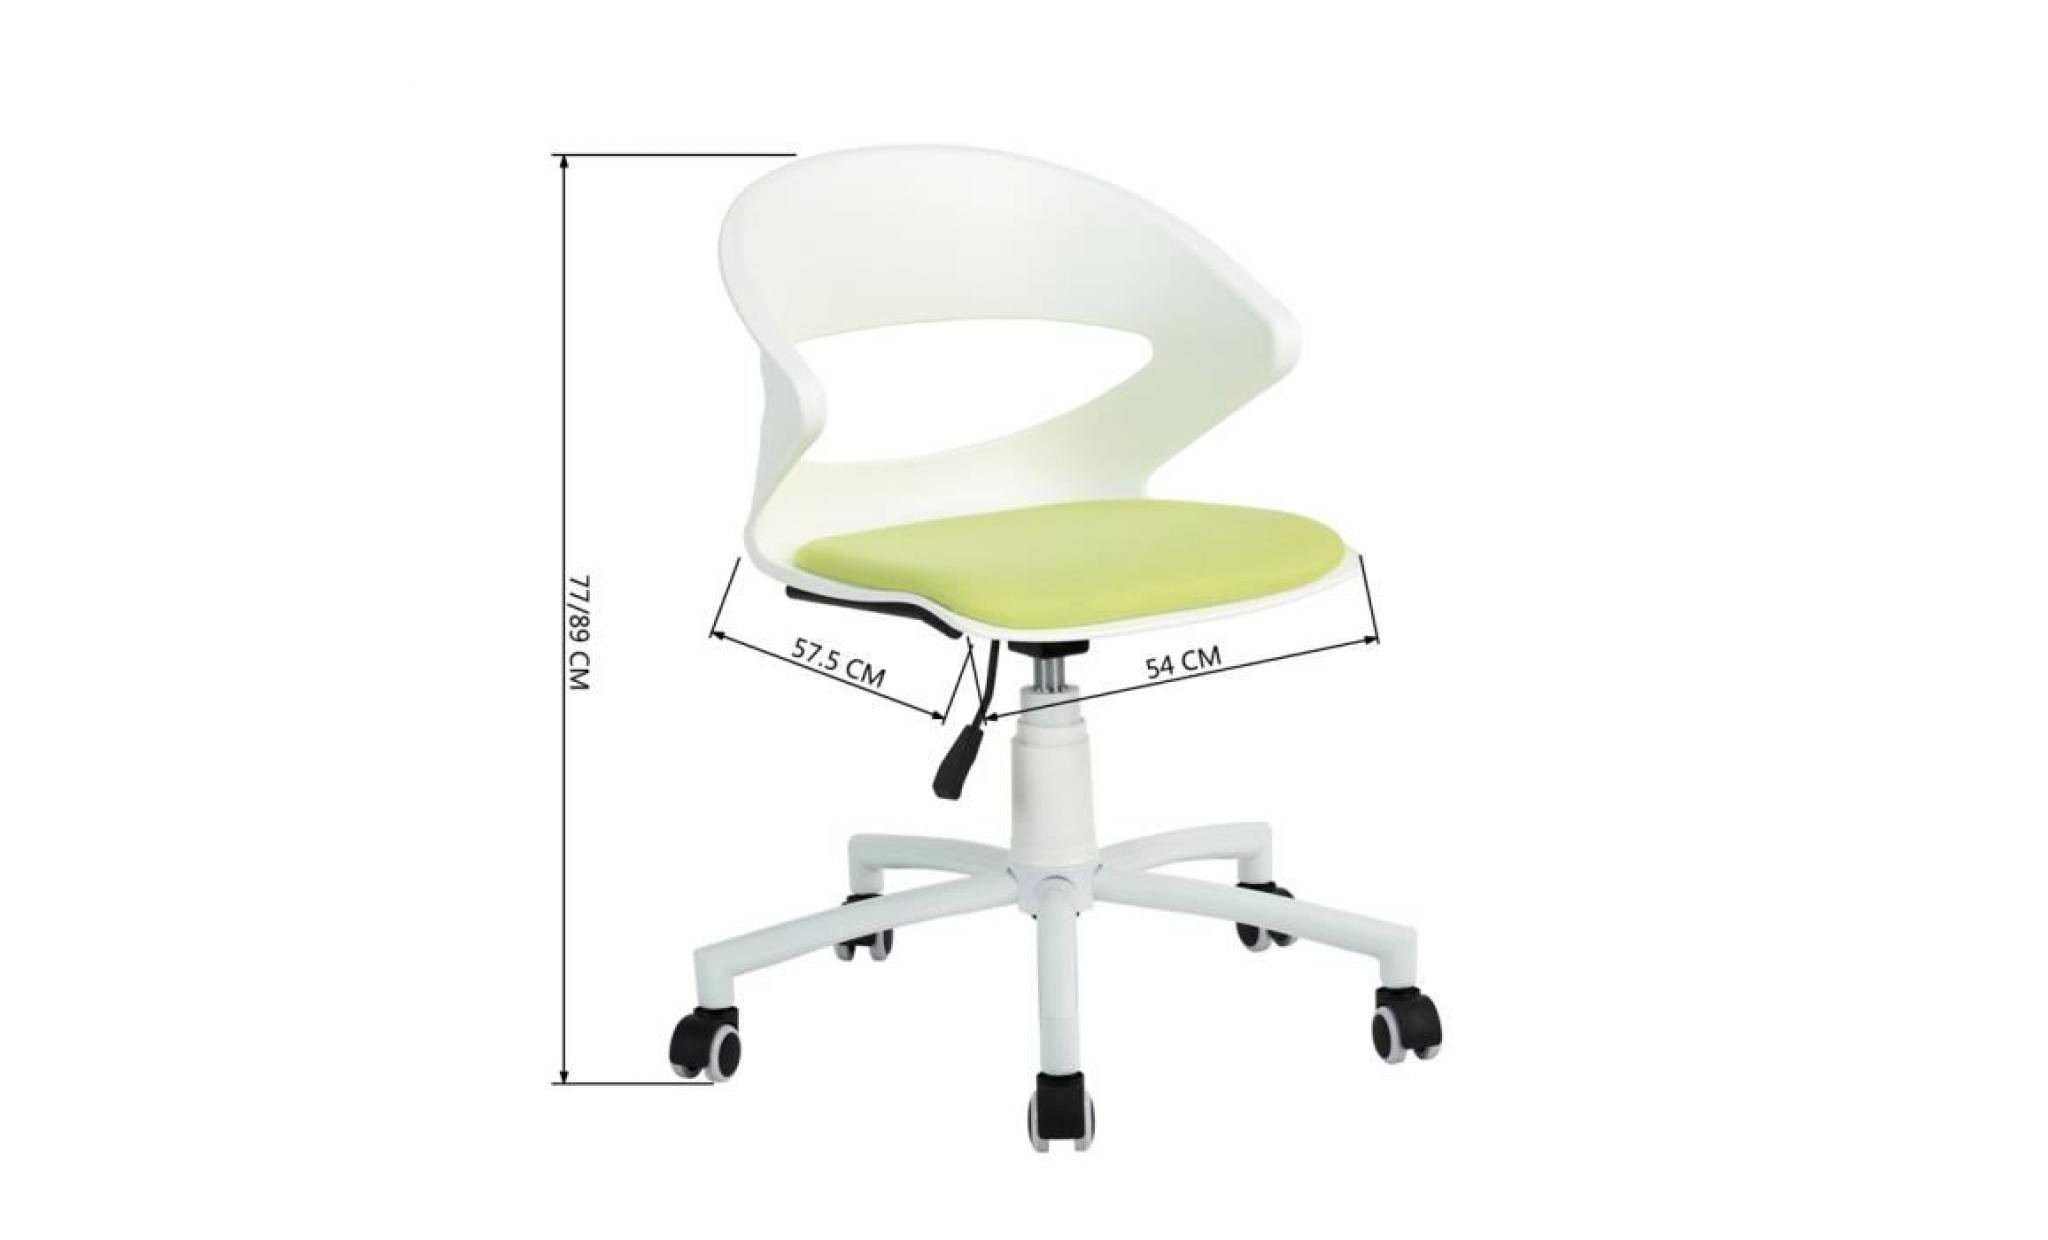 aingoo fauteuil de bureau chaise réglable sur roulettes plastique méétal vert anis blanc pas cher